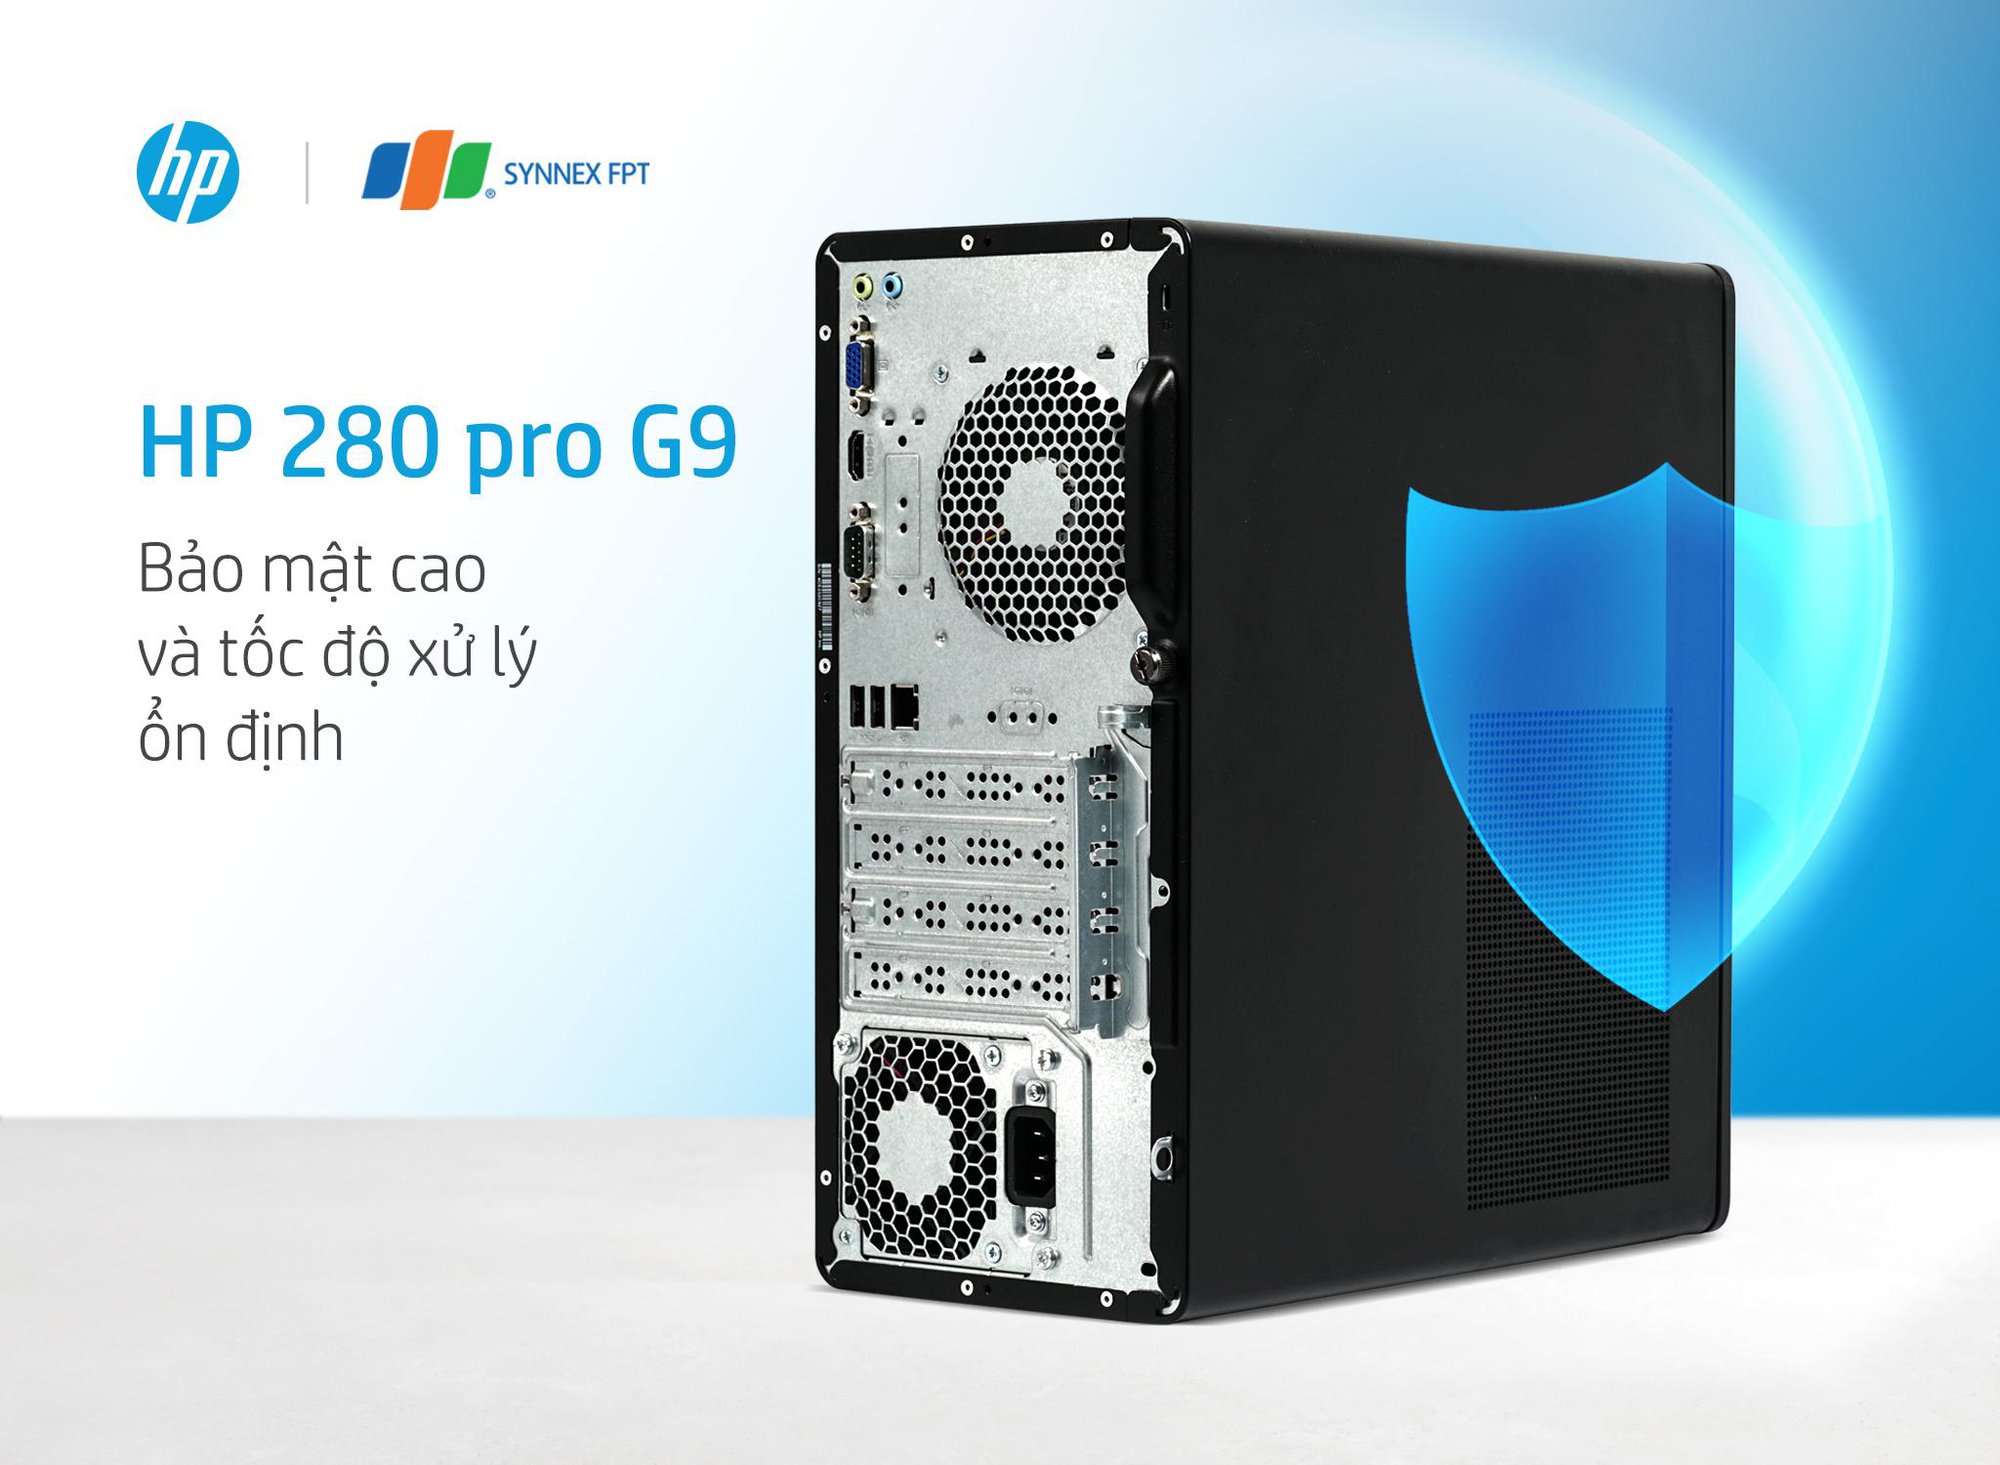 Trải nghiệm HP Pro Tower 280 G9 PCI – Máy tính bàn nâng cấp hoàn thiện - Ảnh 2.